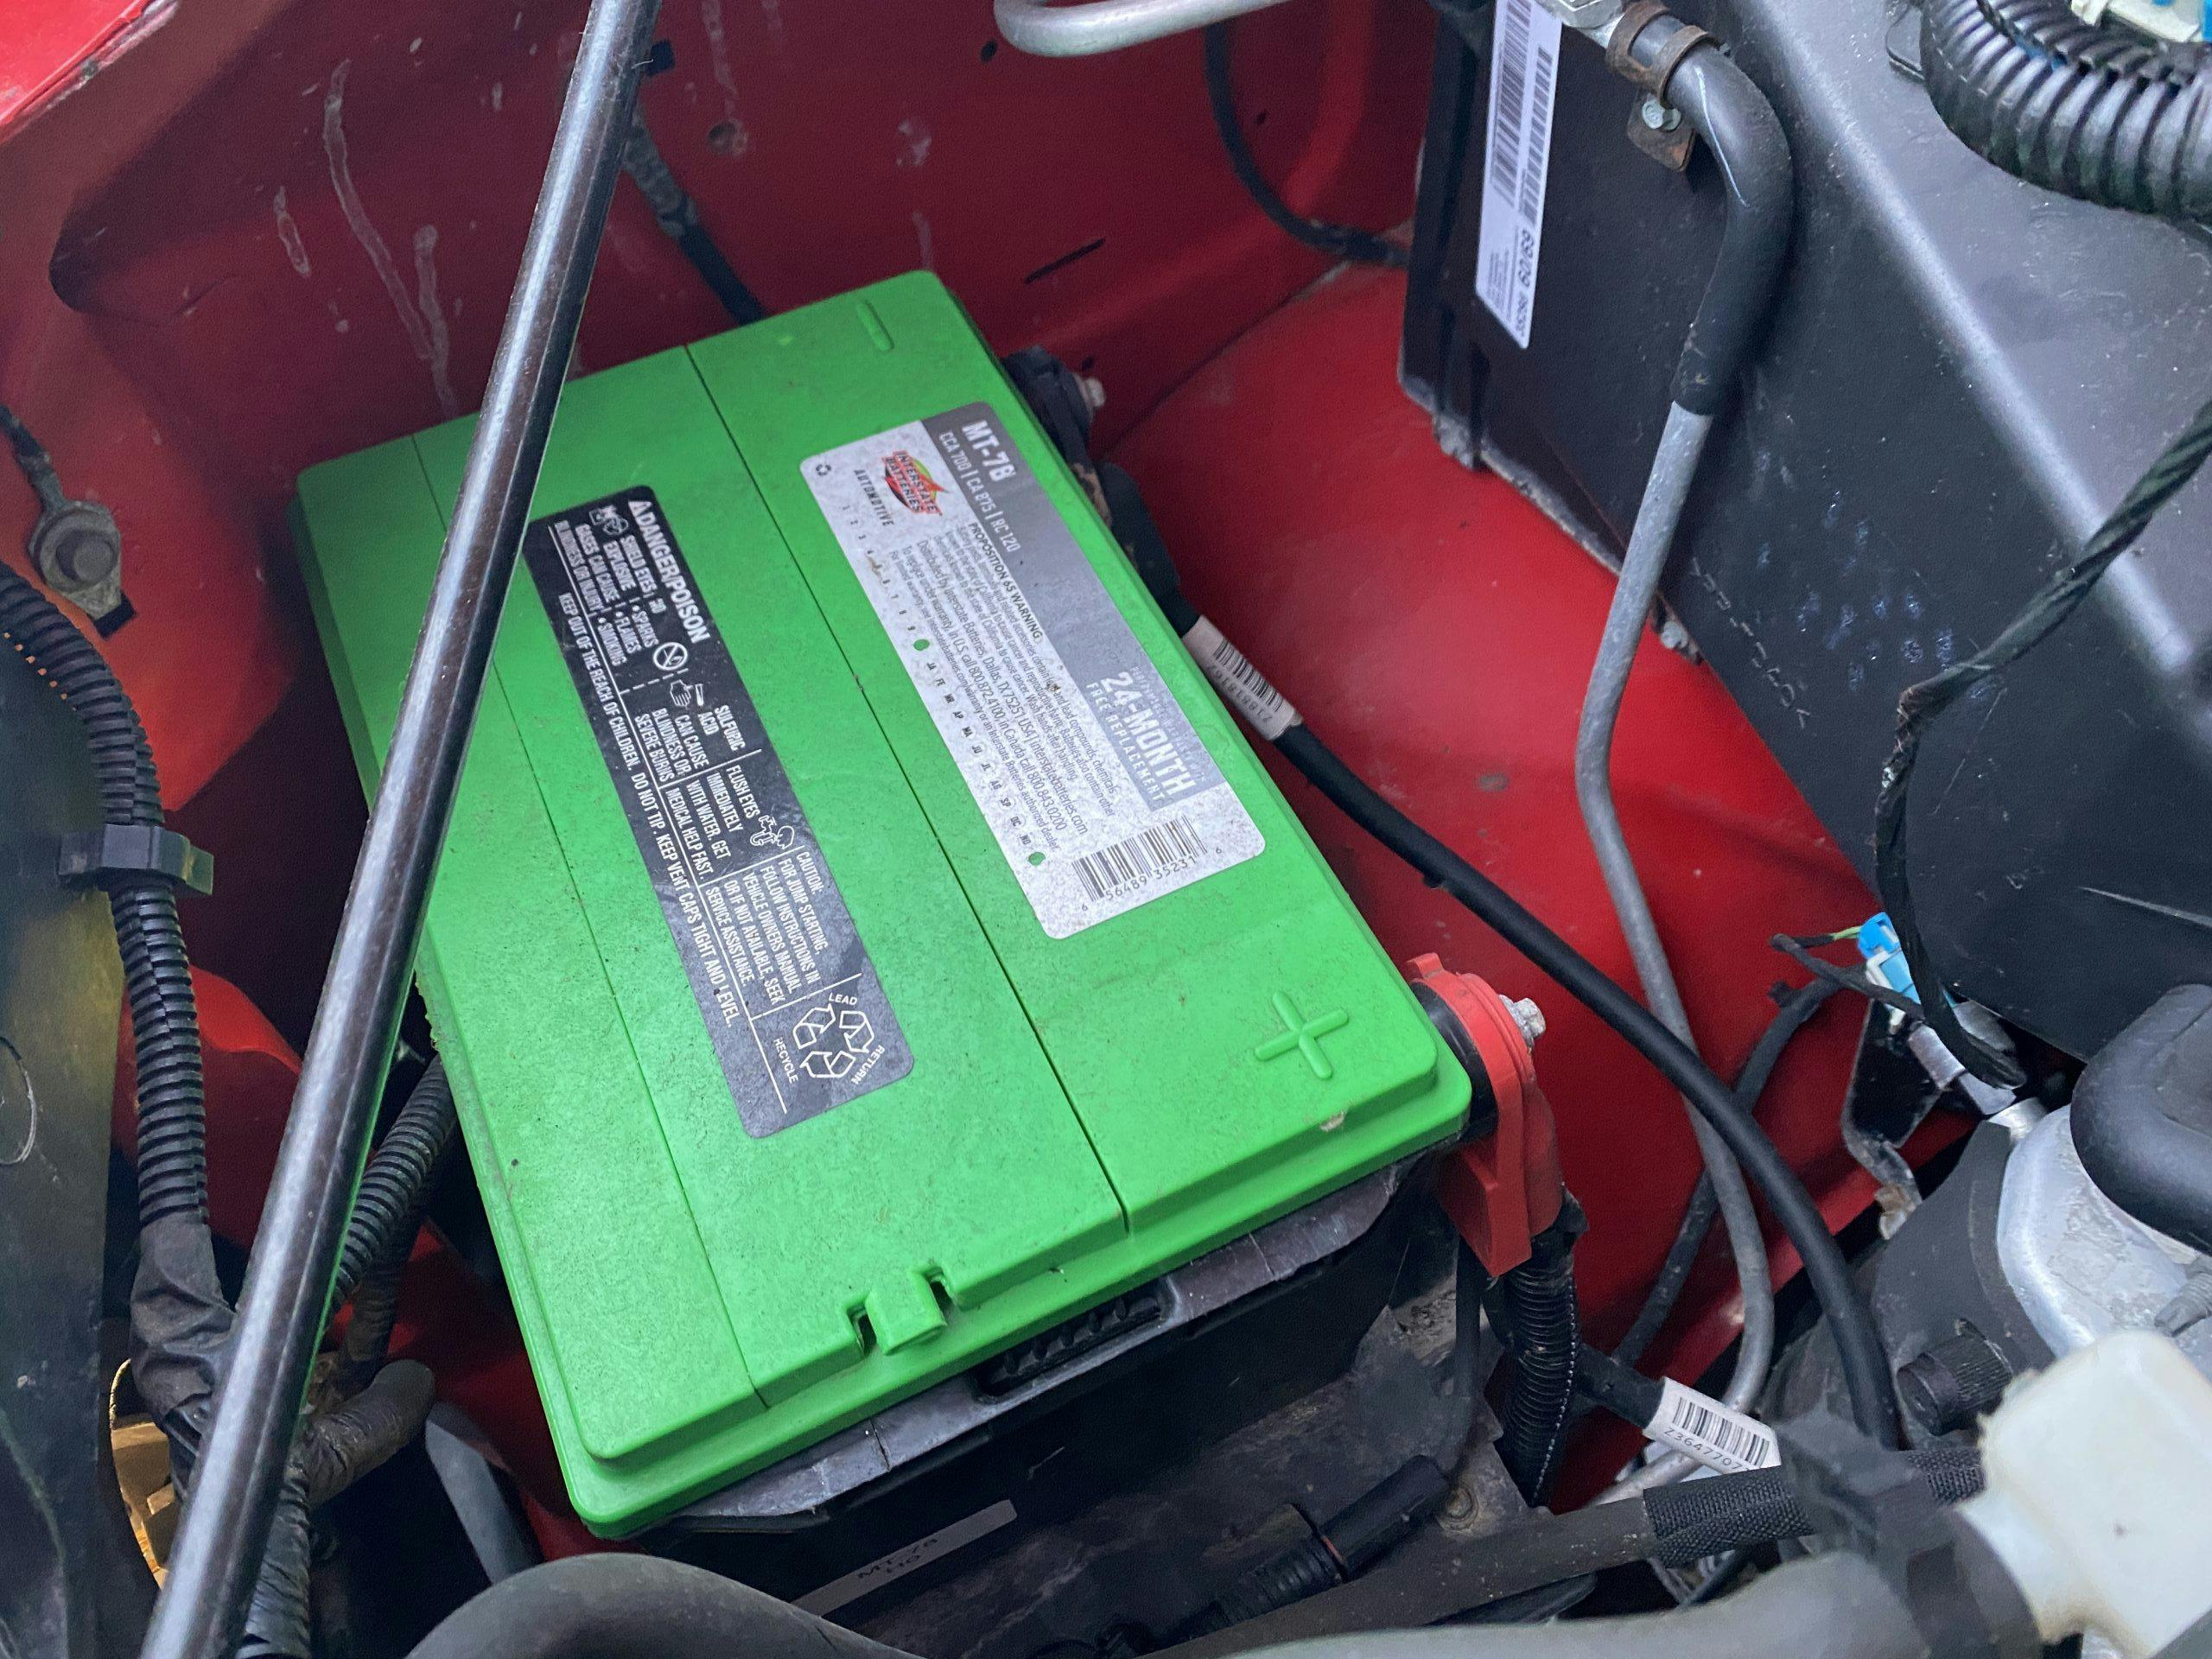 Van battery